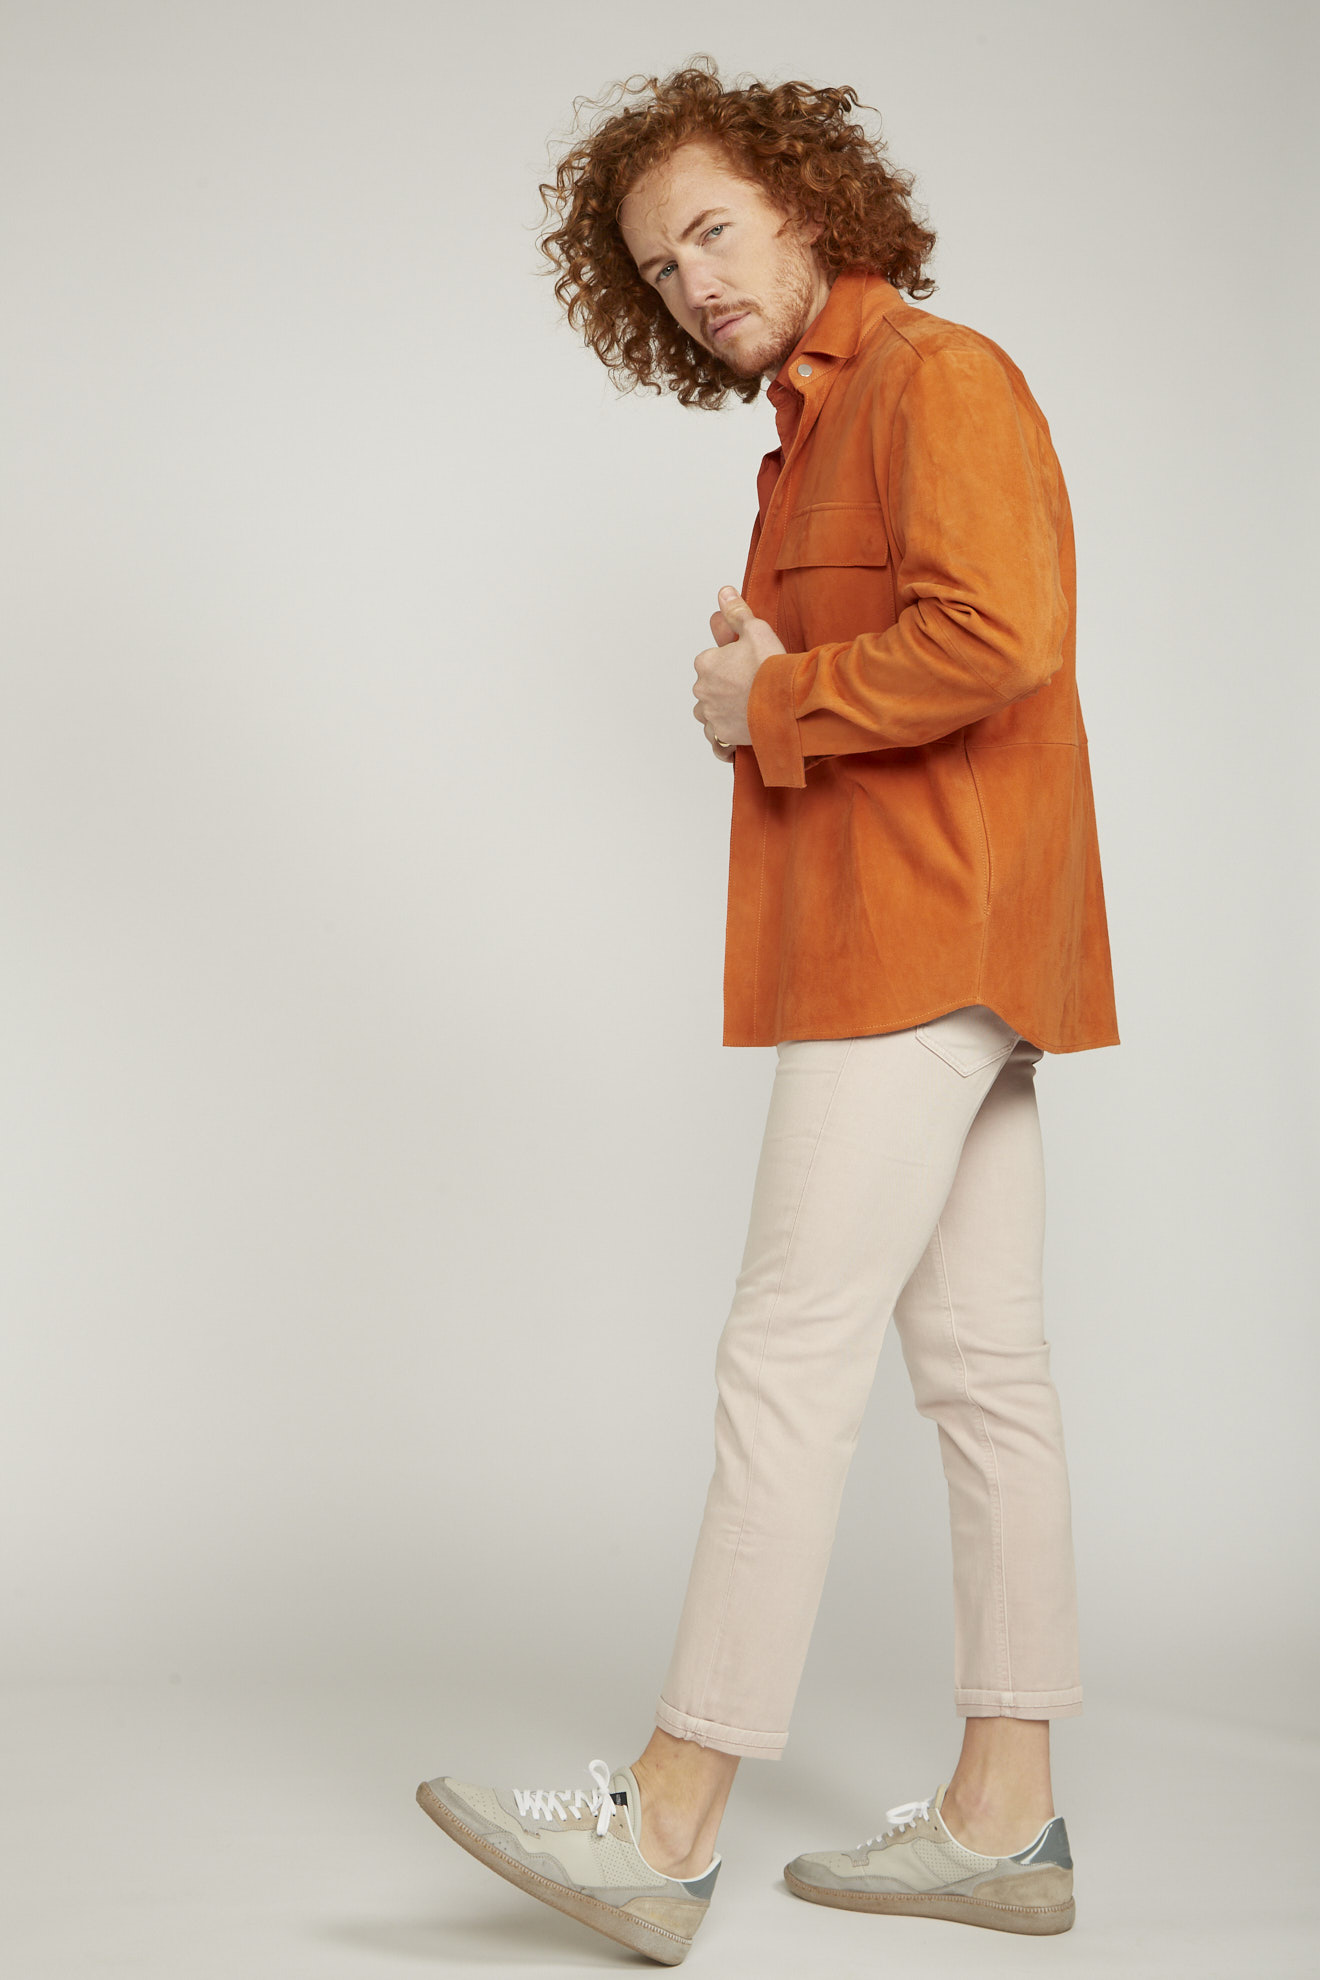 arma shirt orange plain leather model style